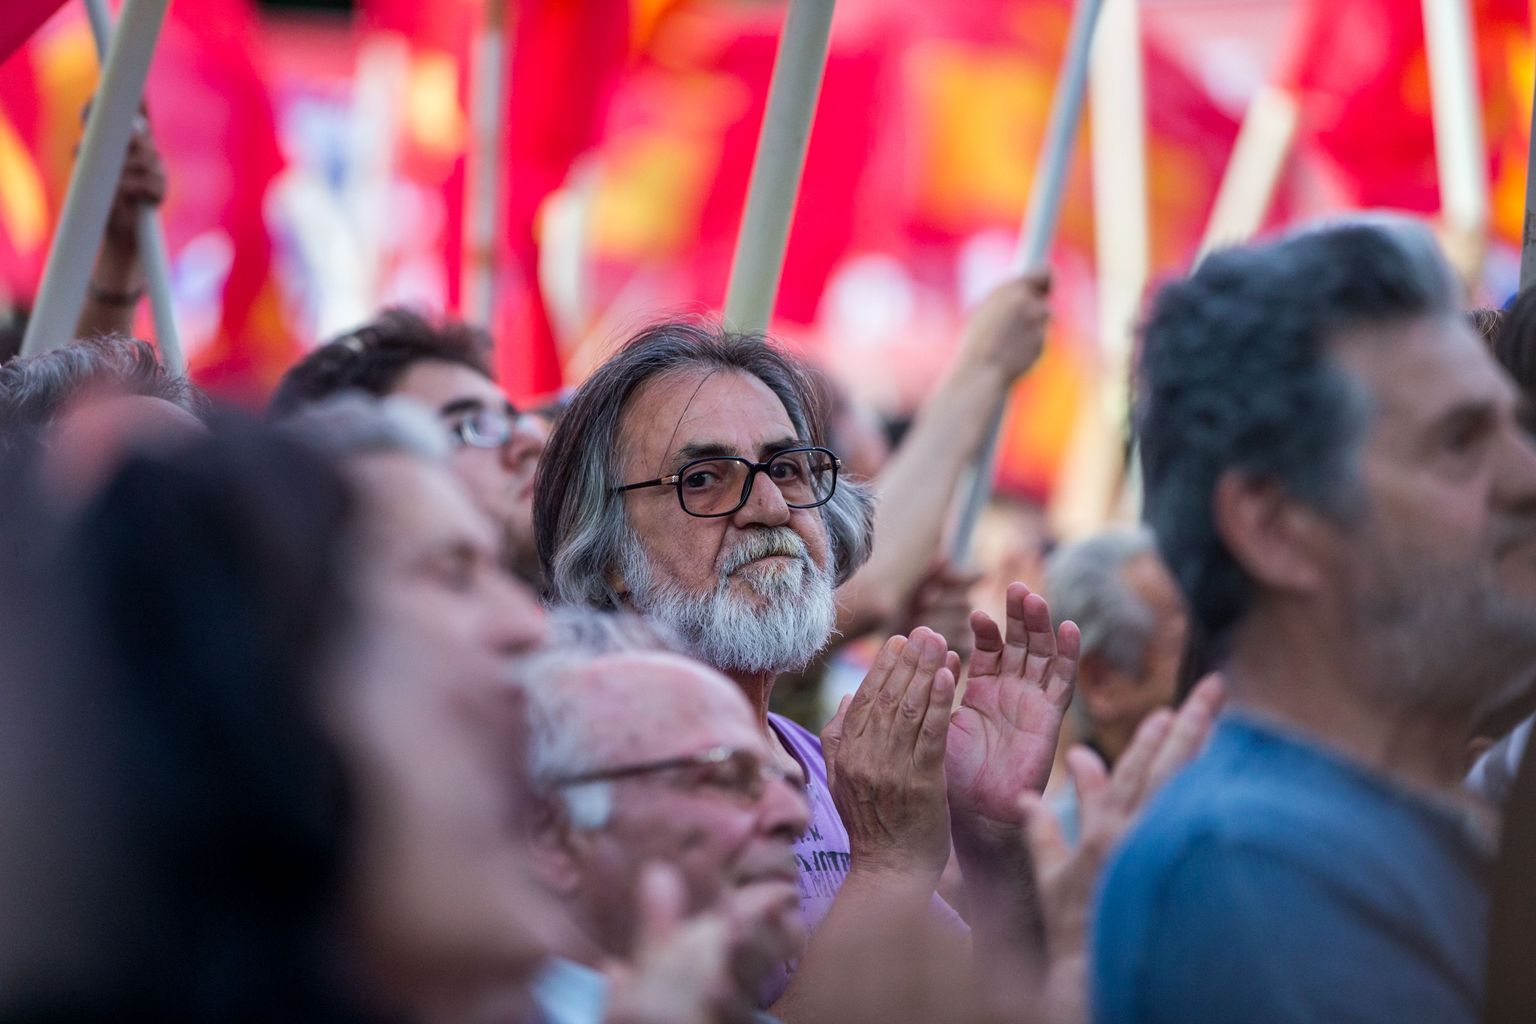 Kreeka kommunistliku partei meeleavaldus Syntagma väljakul.